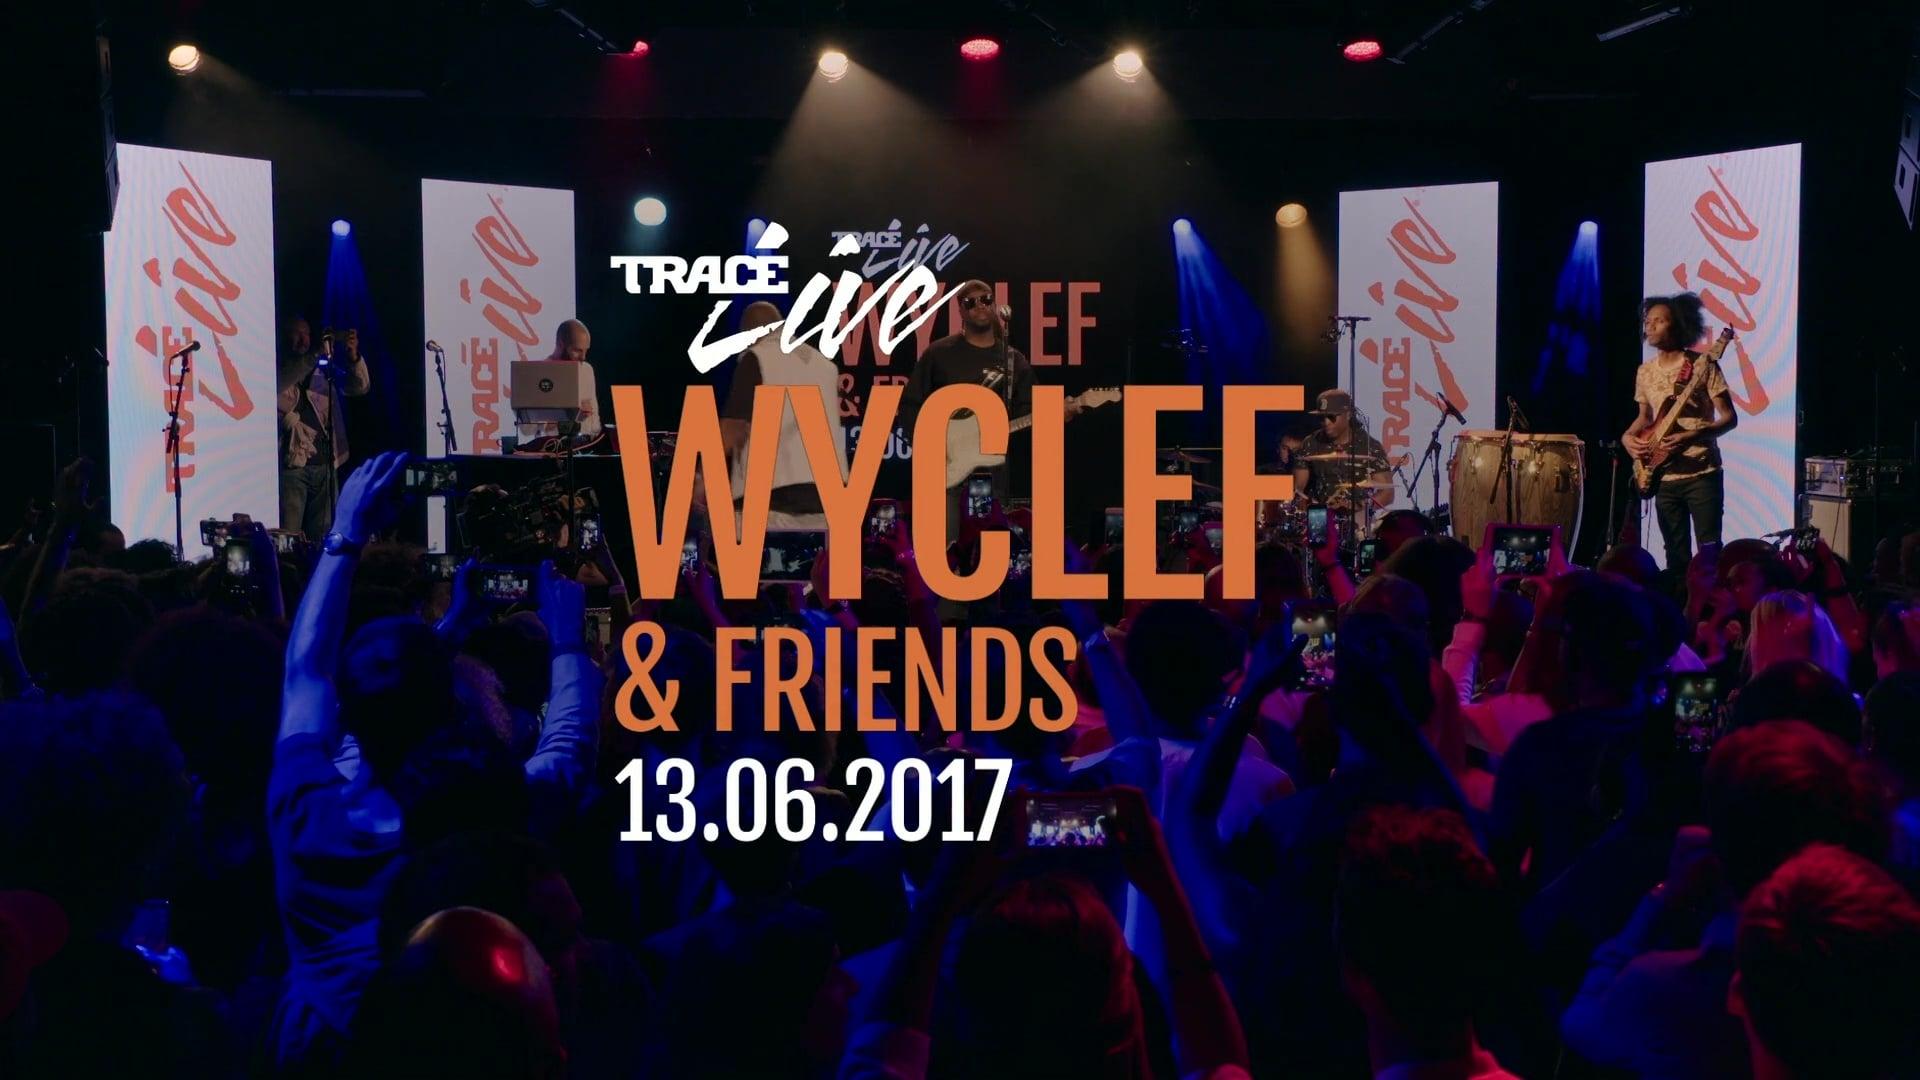 Wyclef Jean & Friends backdrop